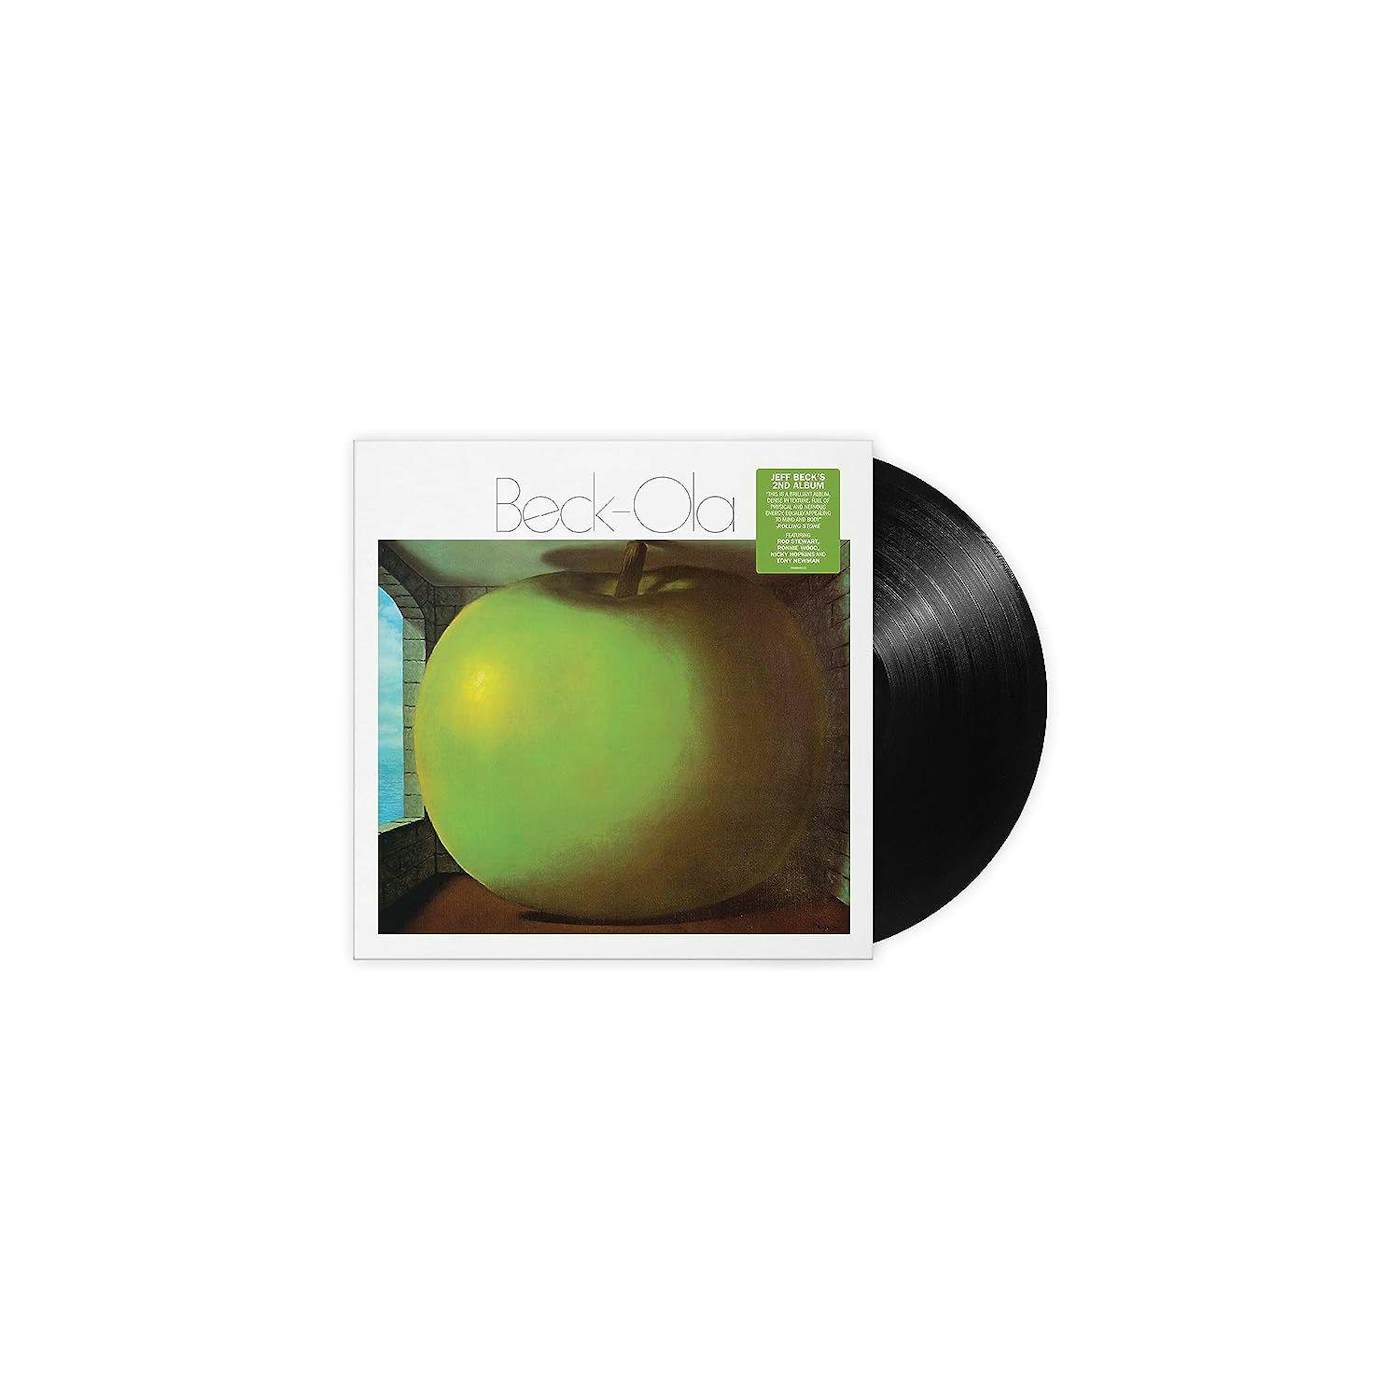 Jeff Beck Beck-ola Vinyl Record